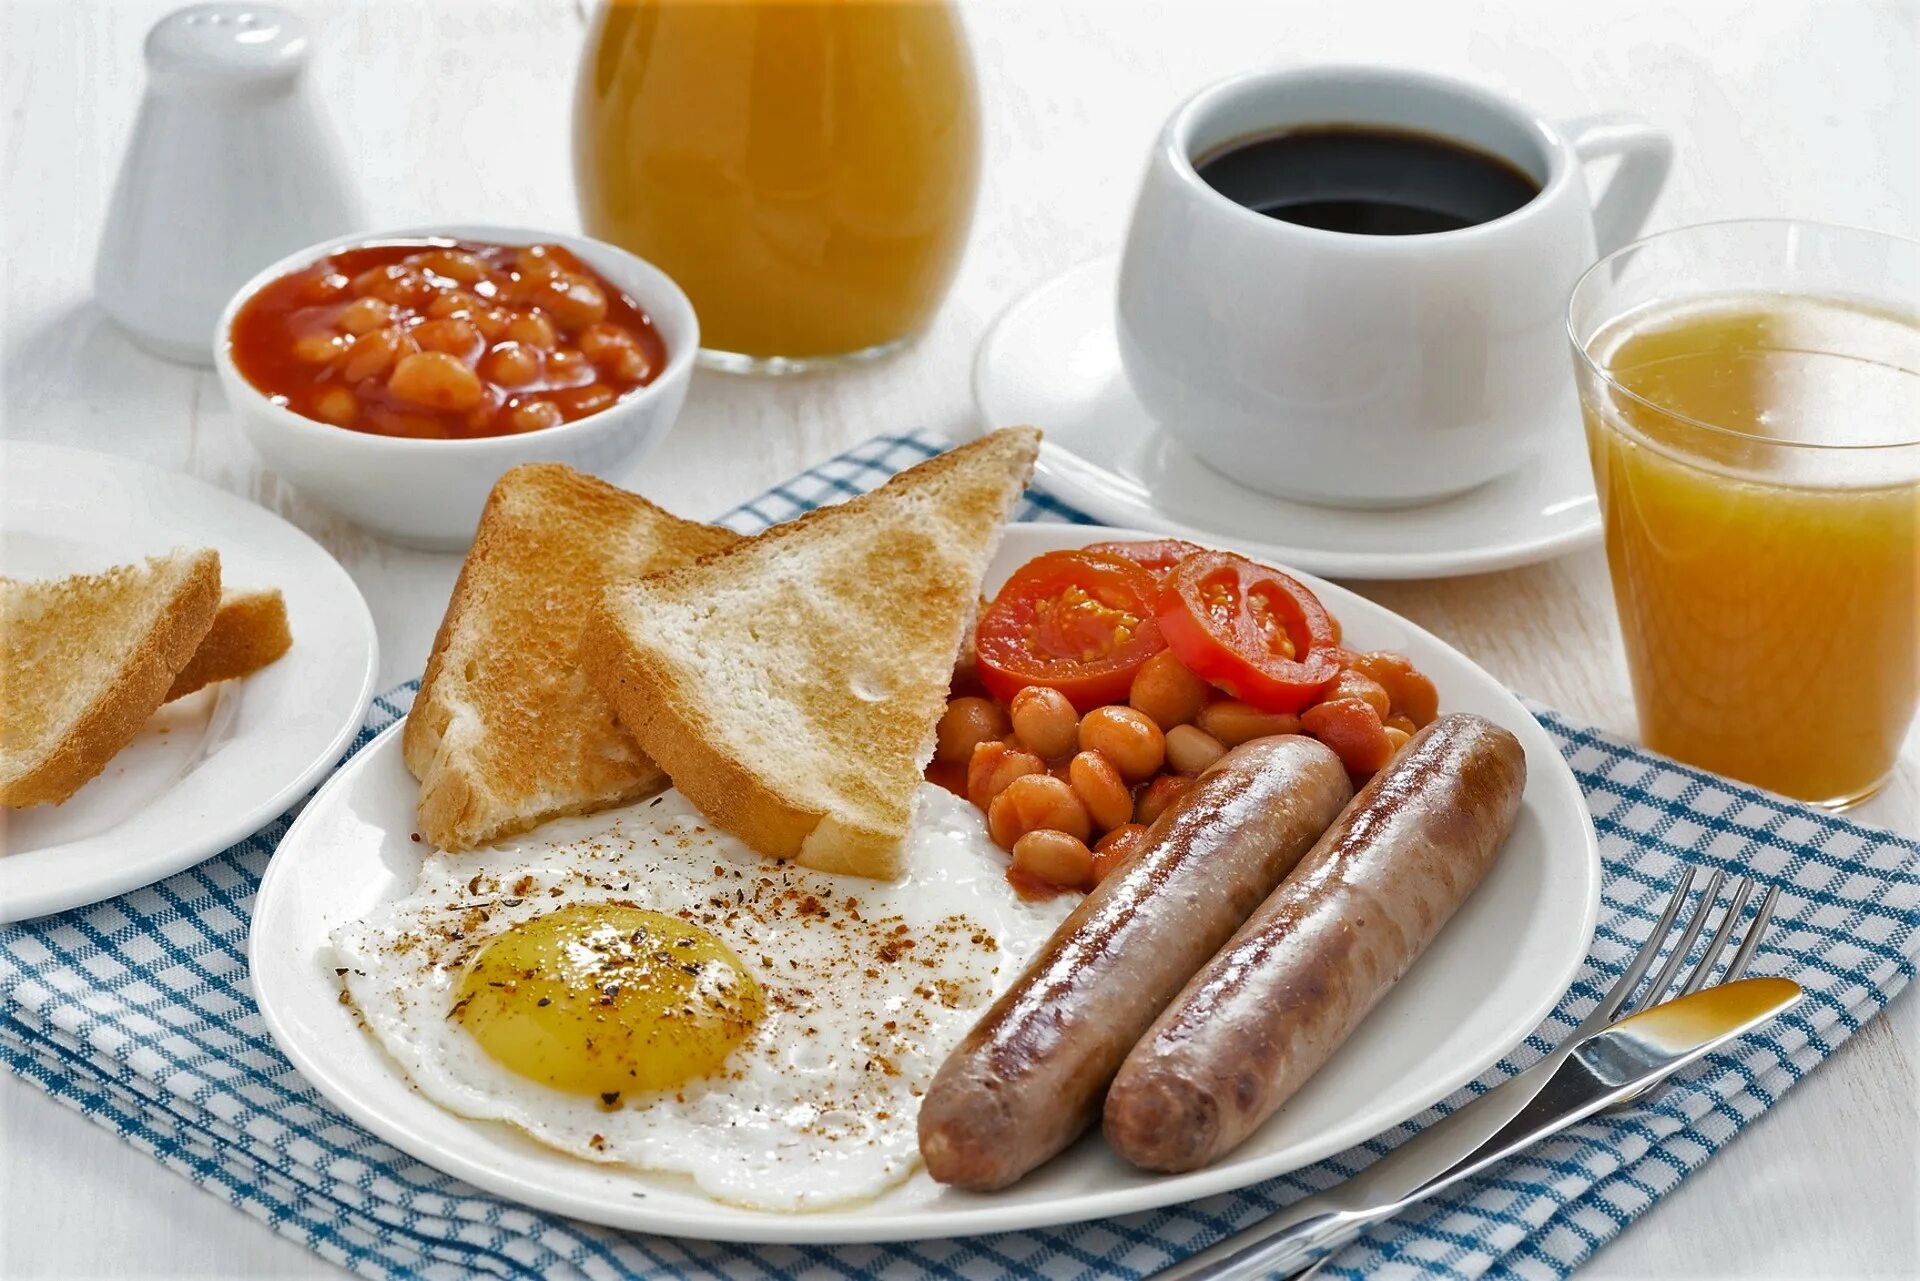 We breakfasted. Завтрак. Яичница английский завтрак. Самые вредные продукты на завтрак. Хлеб с колбасой.